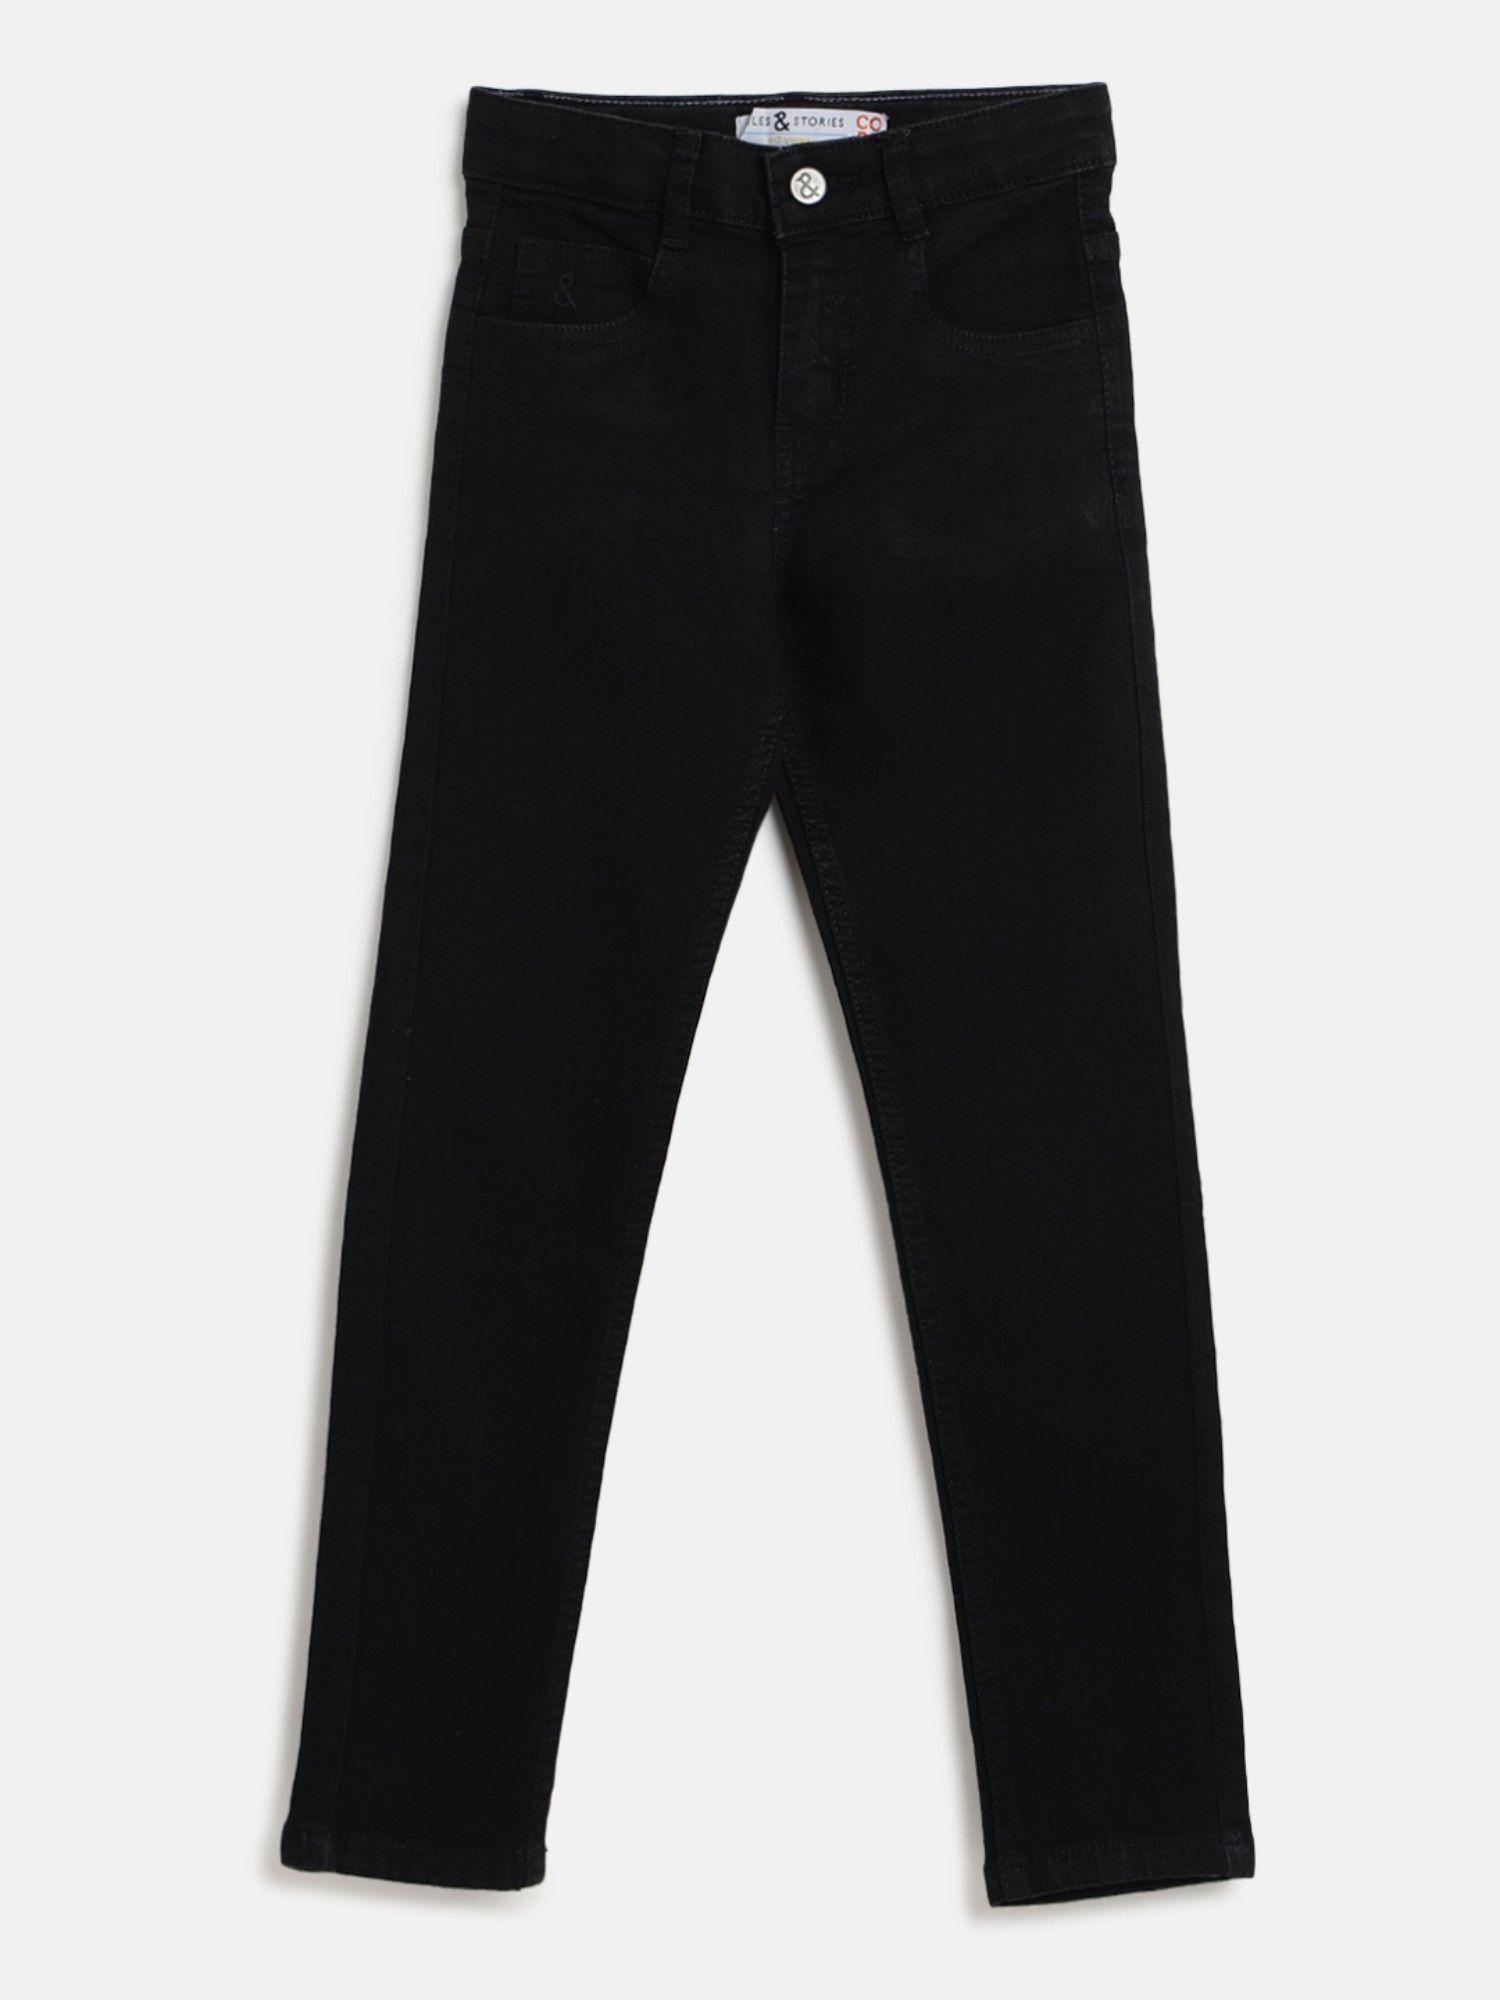 Baby Boy's Solid Black Lycra Slim Fit Clean Look Jeans